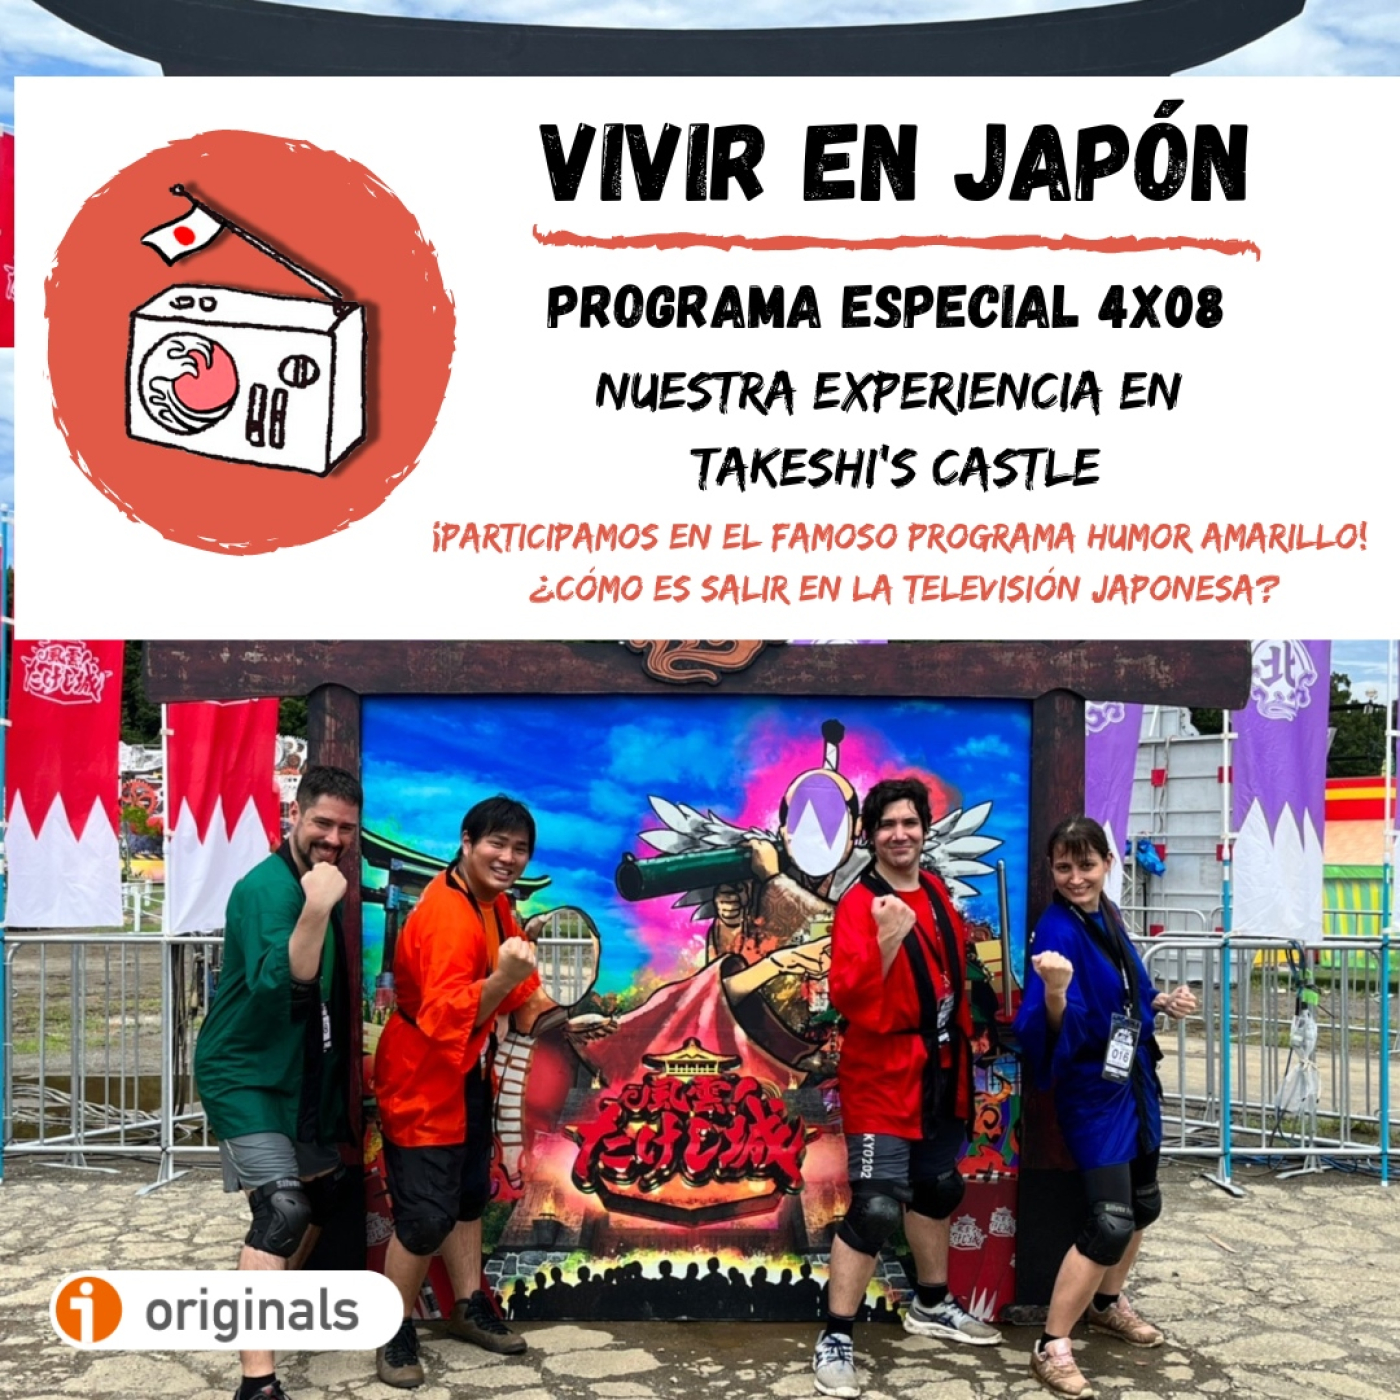 Vivir en Japon 4x08 - ¡Nuestra experiencia en Takeshi's Castle (HUMOR AMARILLO)!